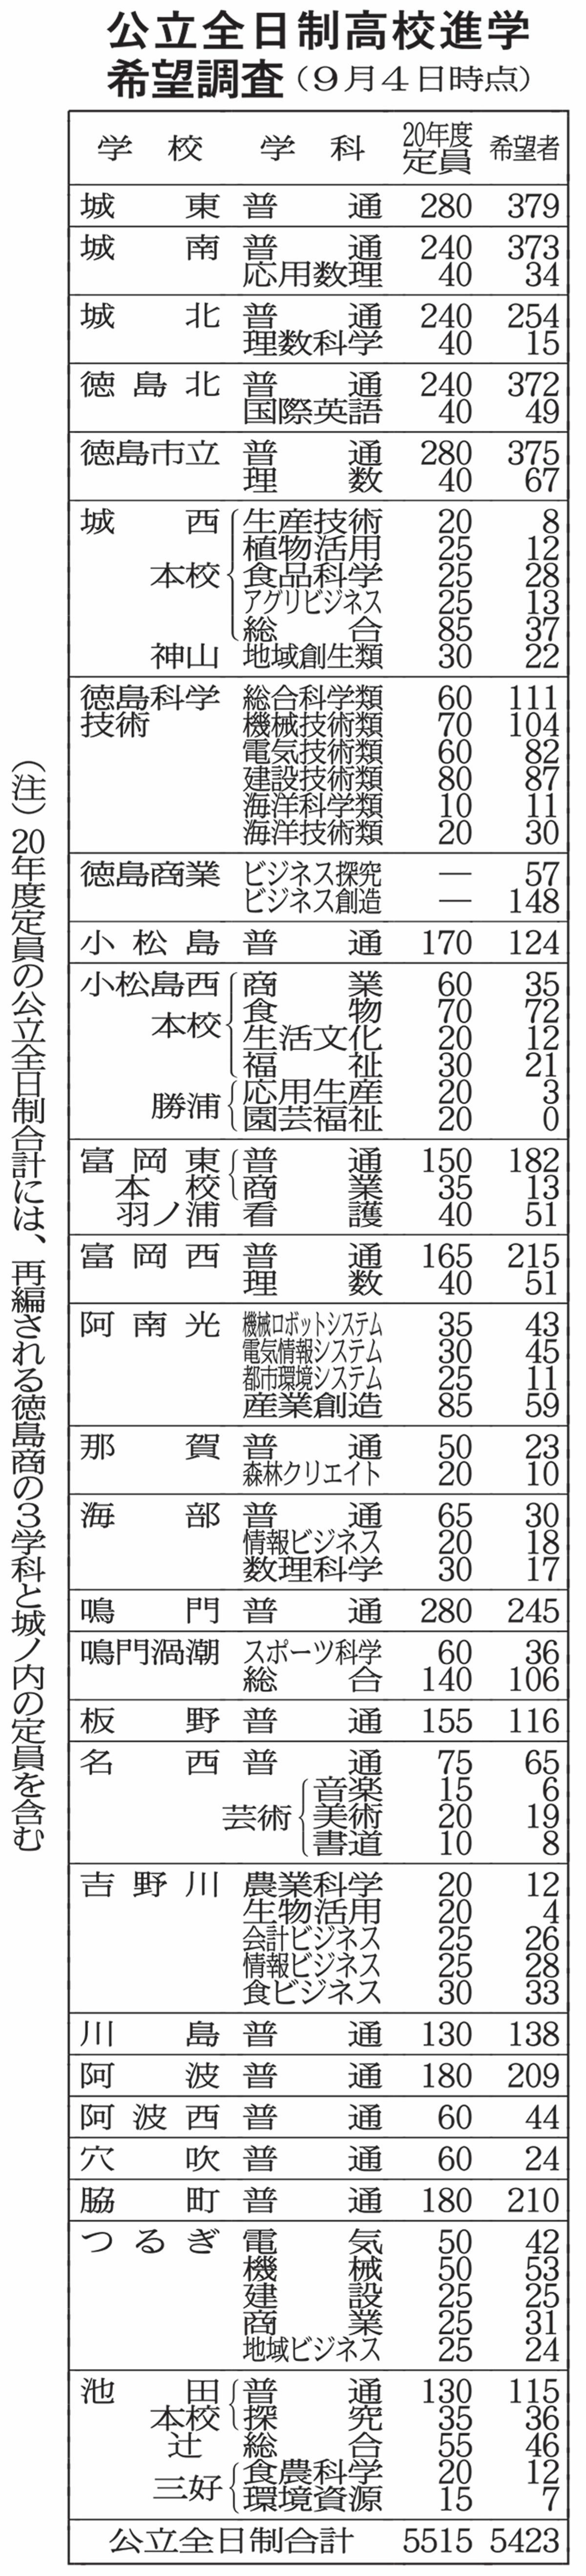 公立全日制高希望94 53 県内中3調査 教育 徳島ニュース 徳島新聞